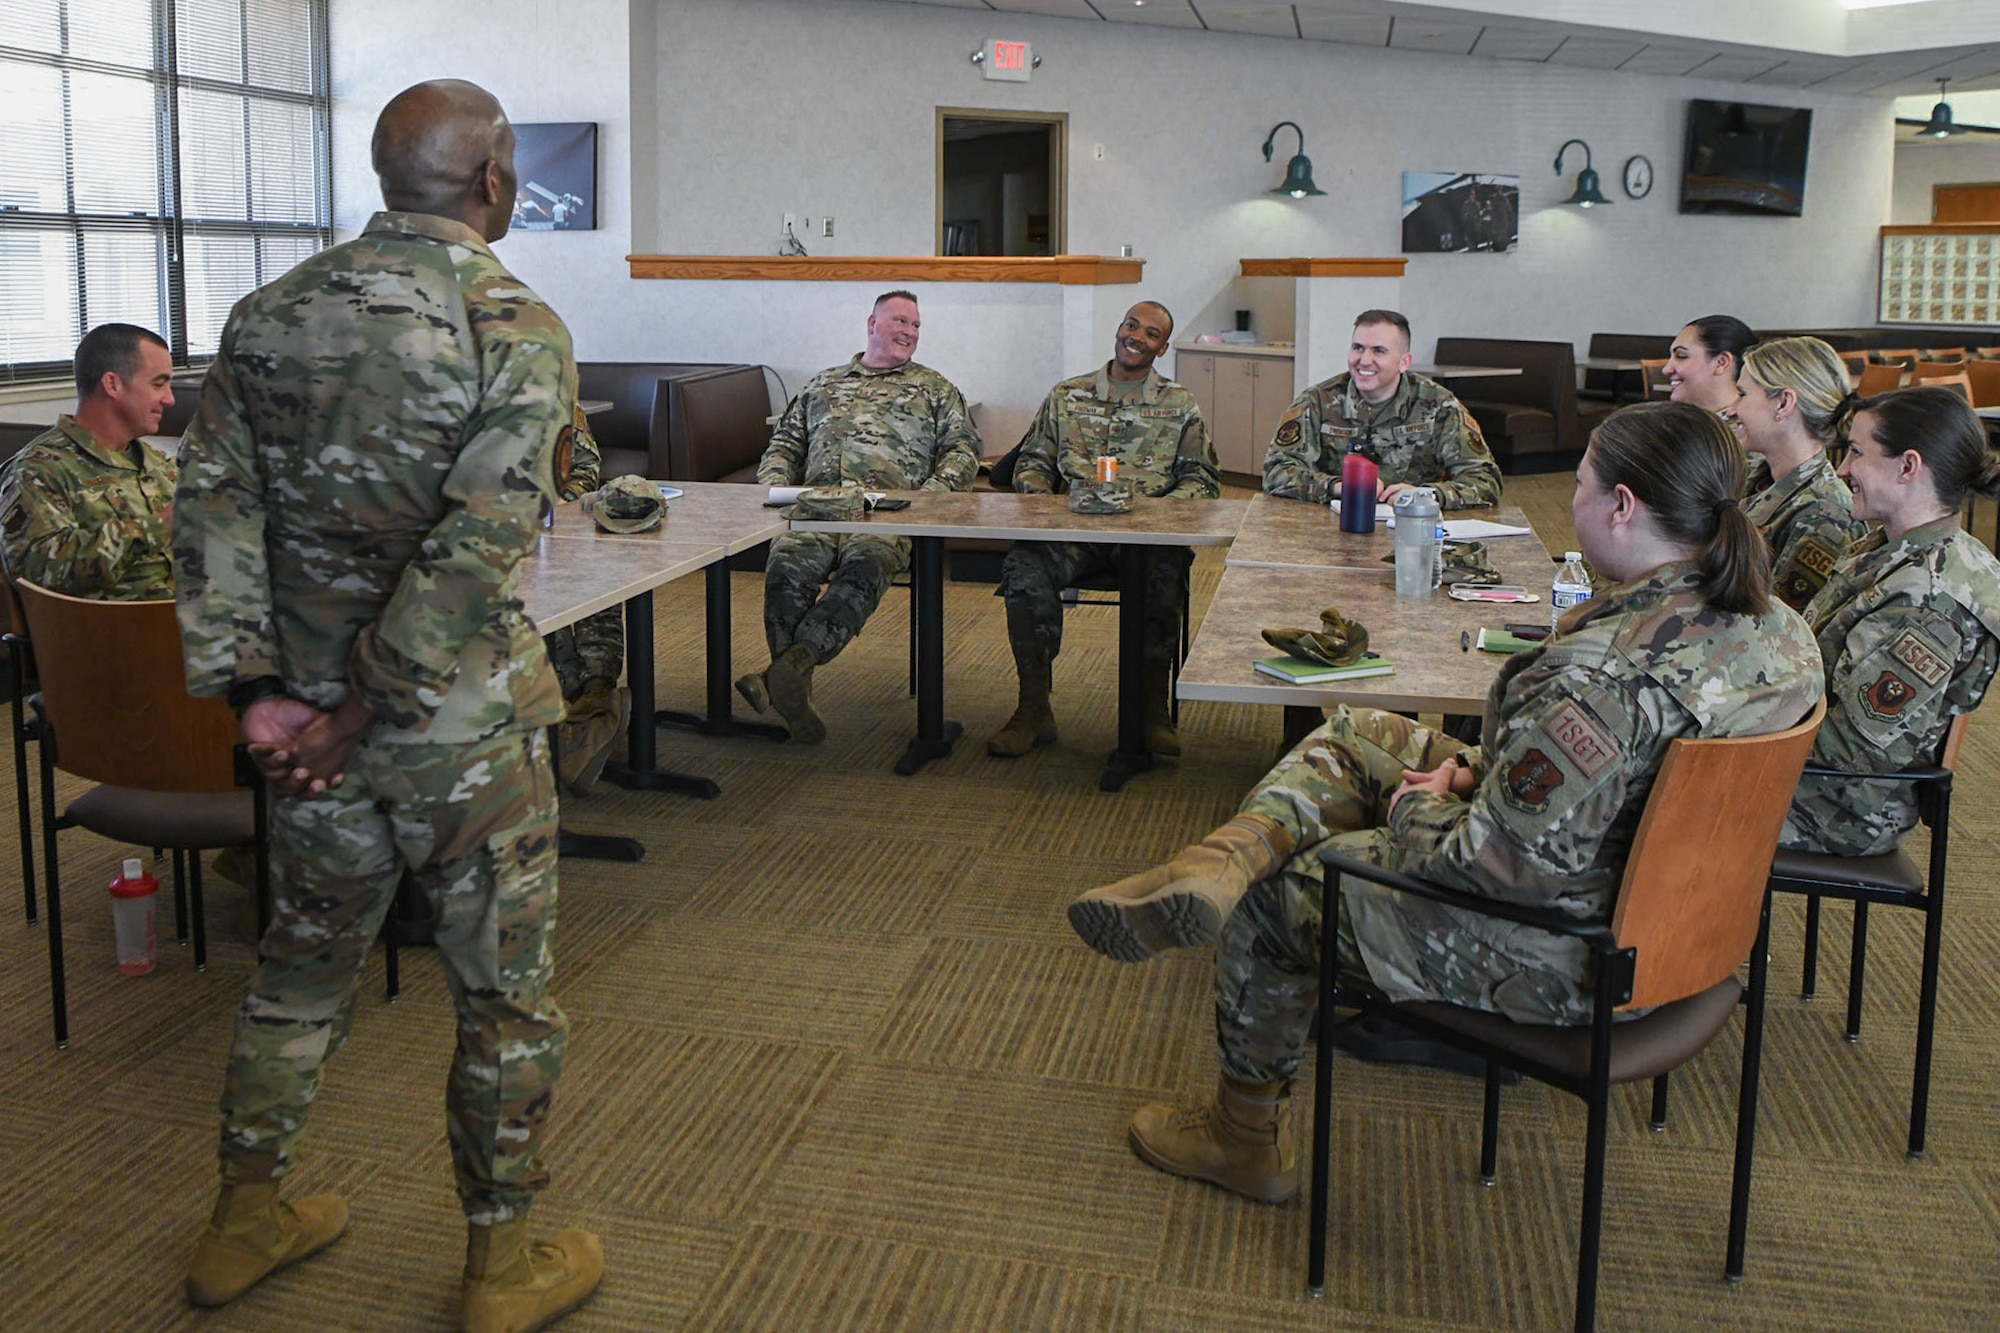 airmen speak to chief master sgt during round table talk